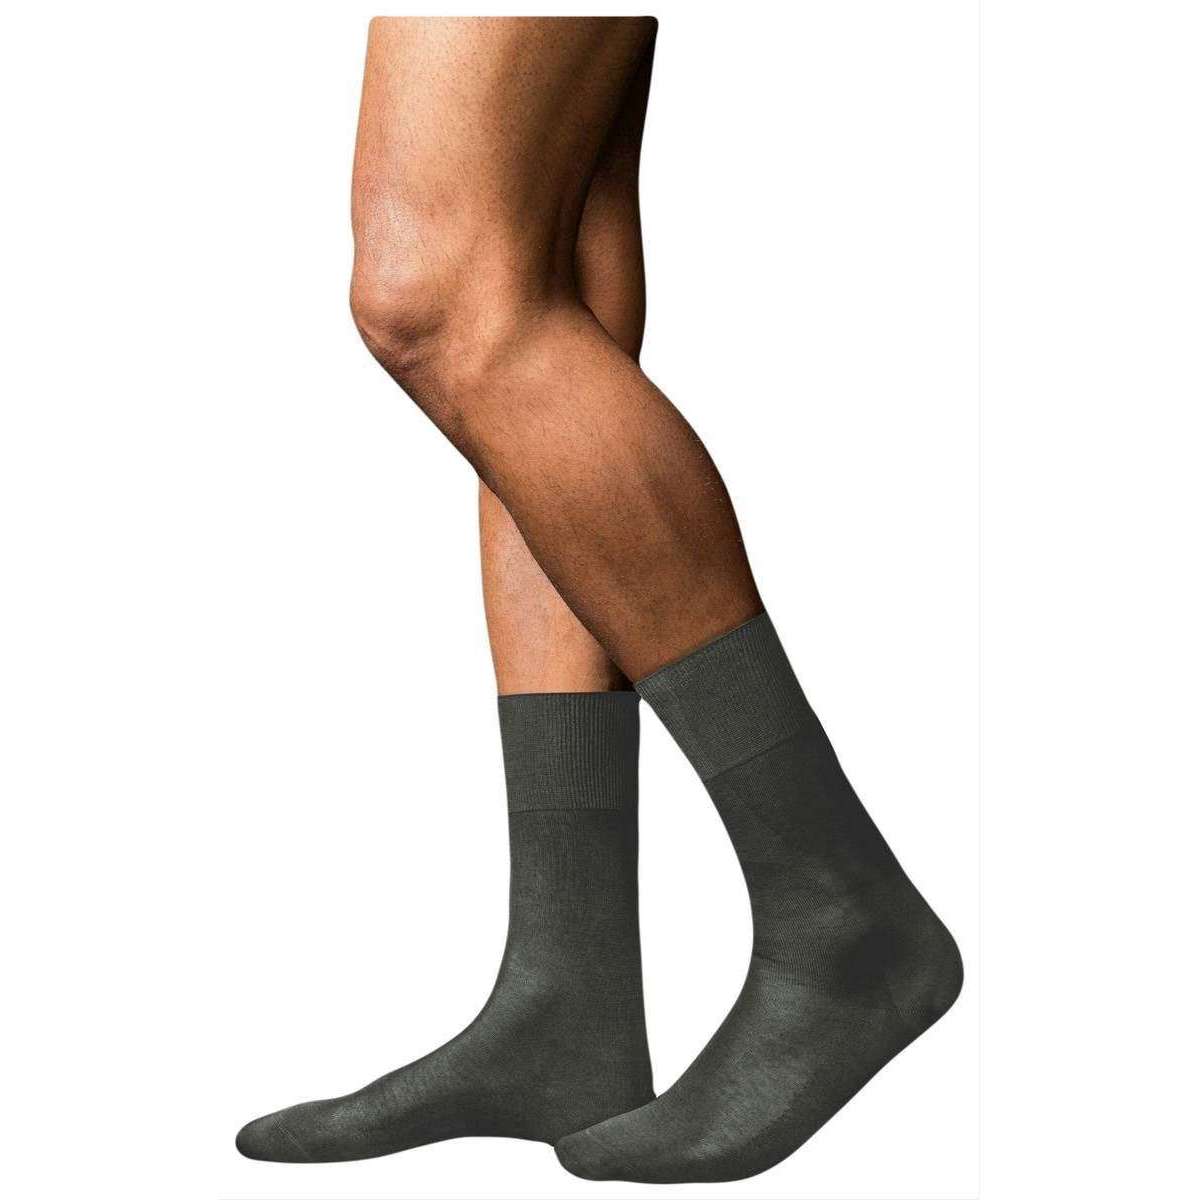 TOETOE Black Everyday Trainer Toe Socks